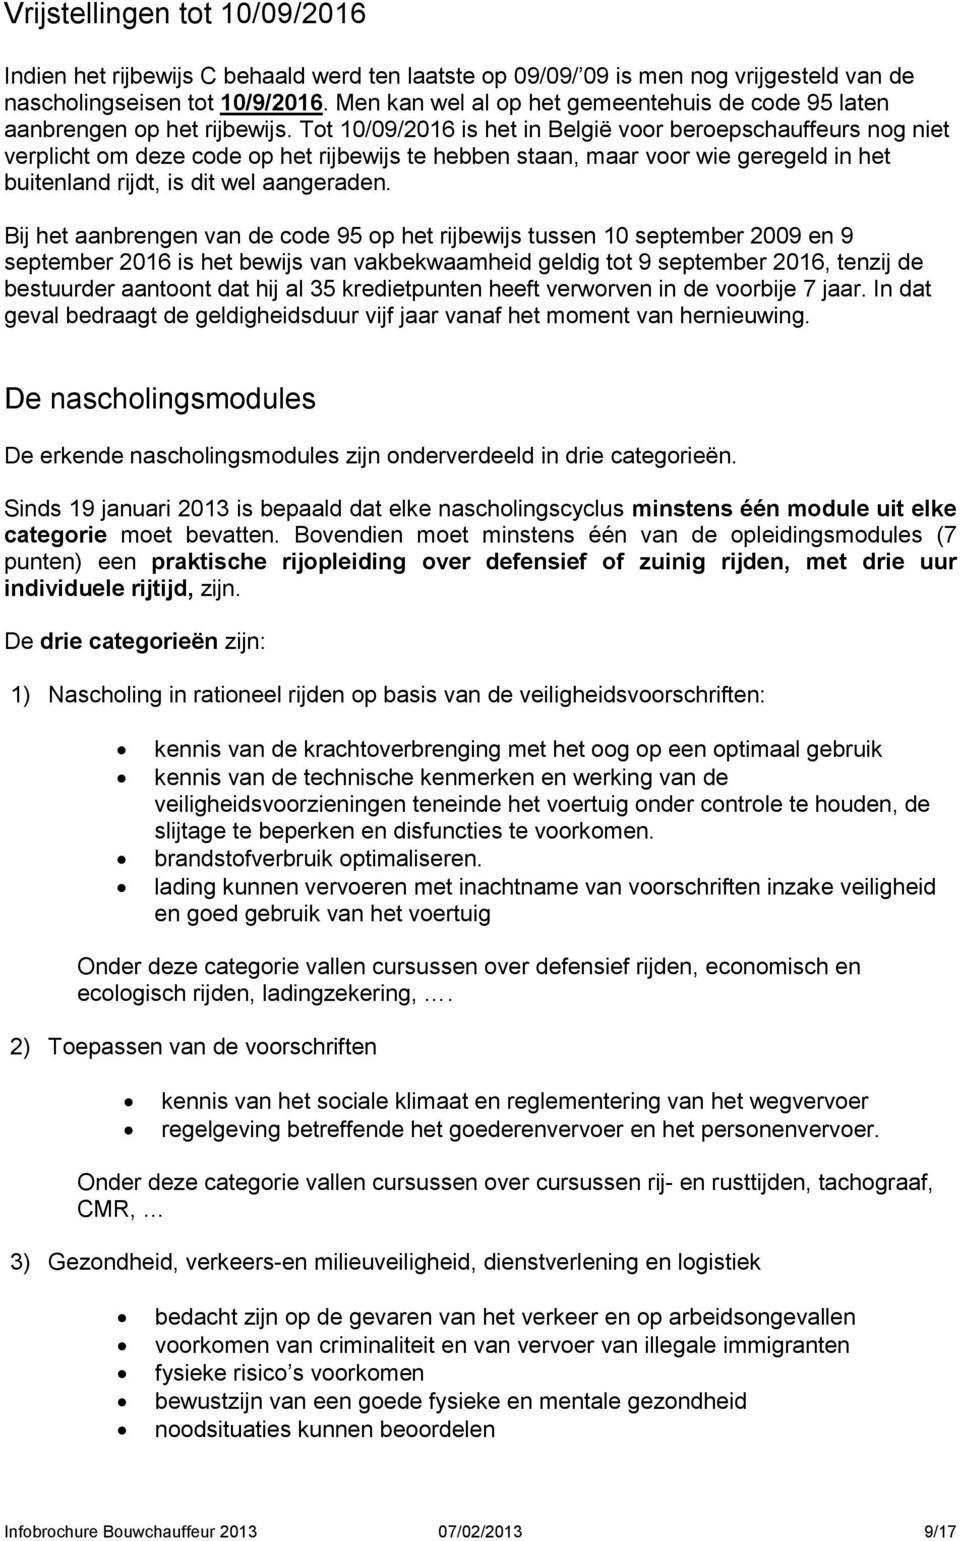 Tot 10/09/2016 is het in België voor beroepschauffeurs nog niet verplicht om deze code op het rijbewijs te hebben staan, maar voor wie geregeld in het buitenland rijdt, is dit wel aangeraden.